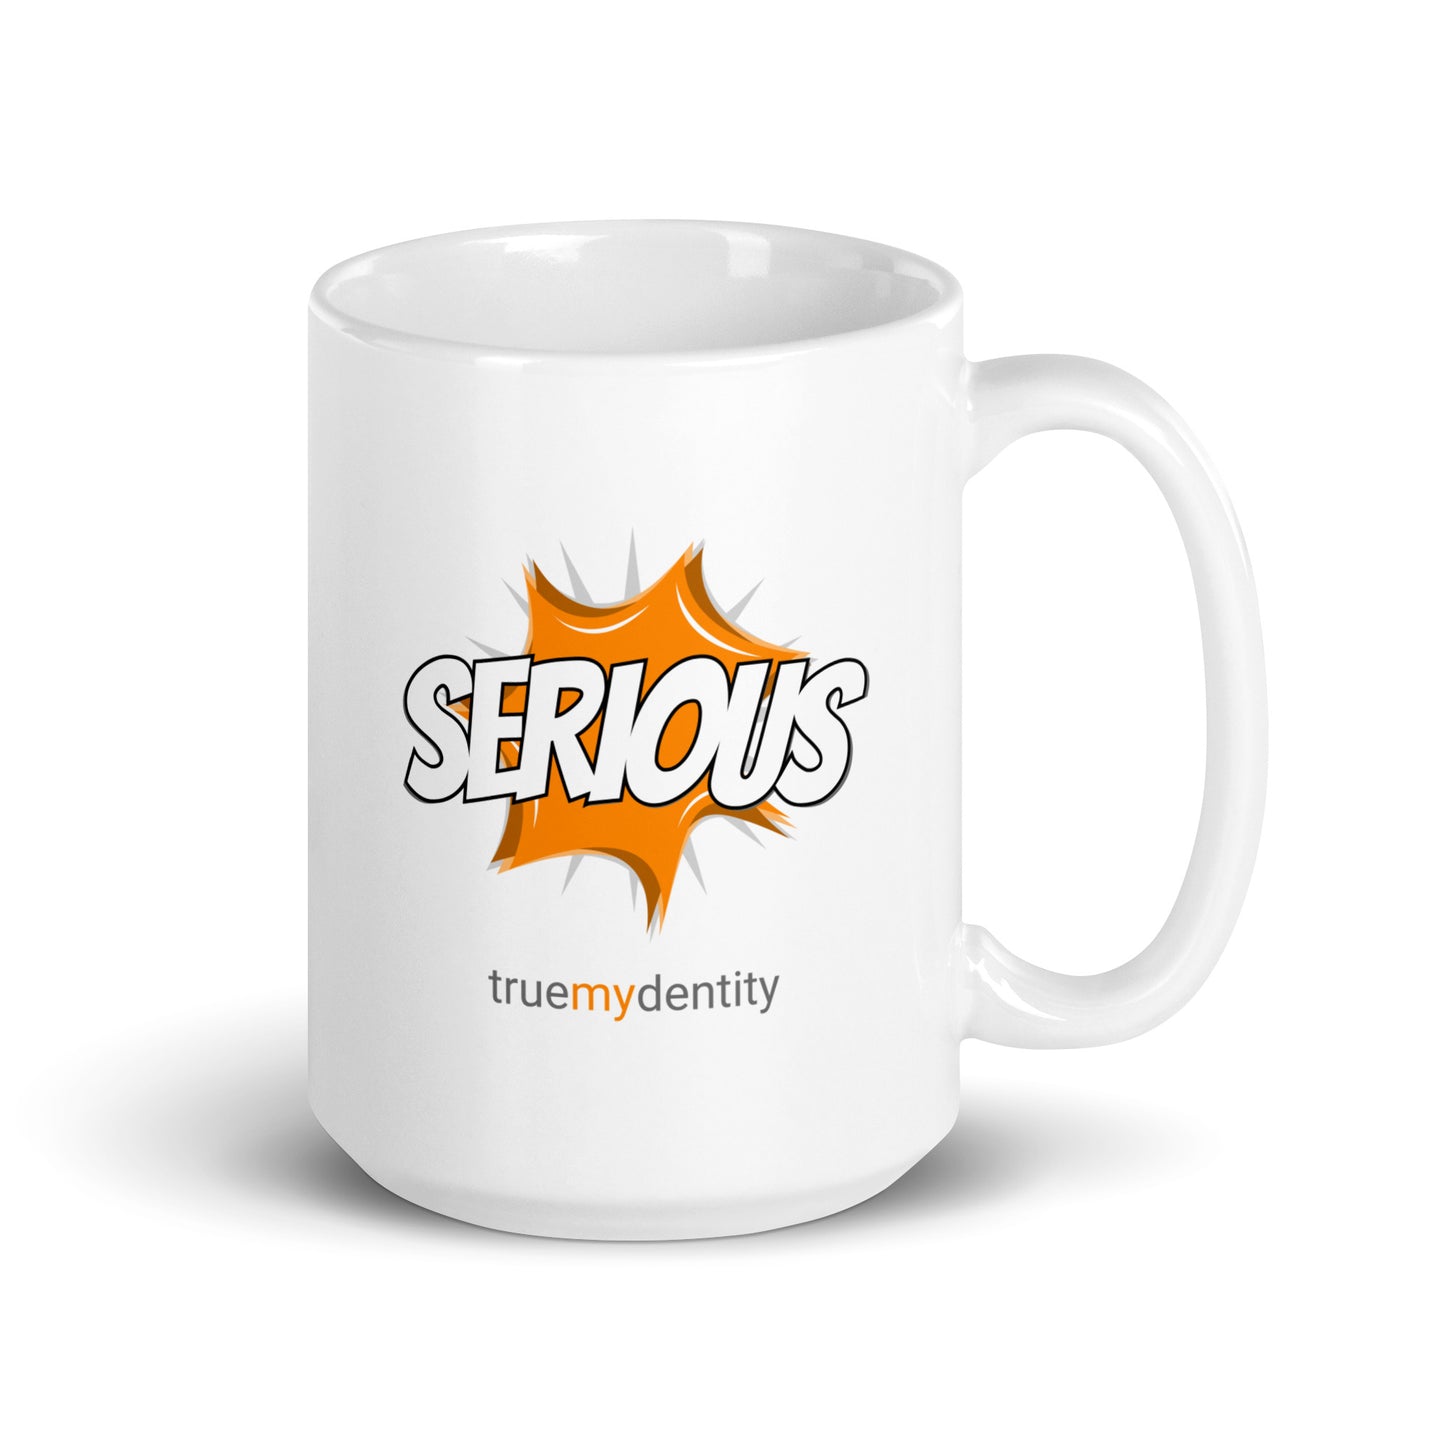 SERIOUS White Coffee Mug Action 11 oz or 15 oz